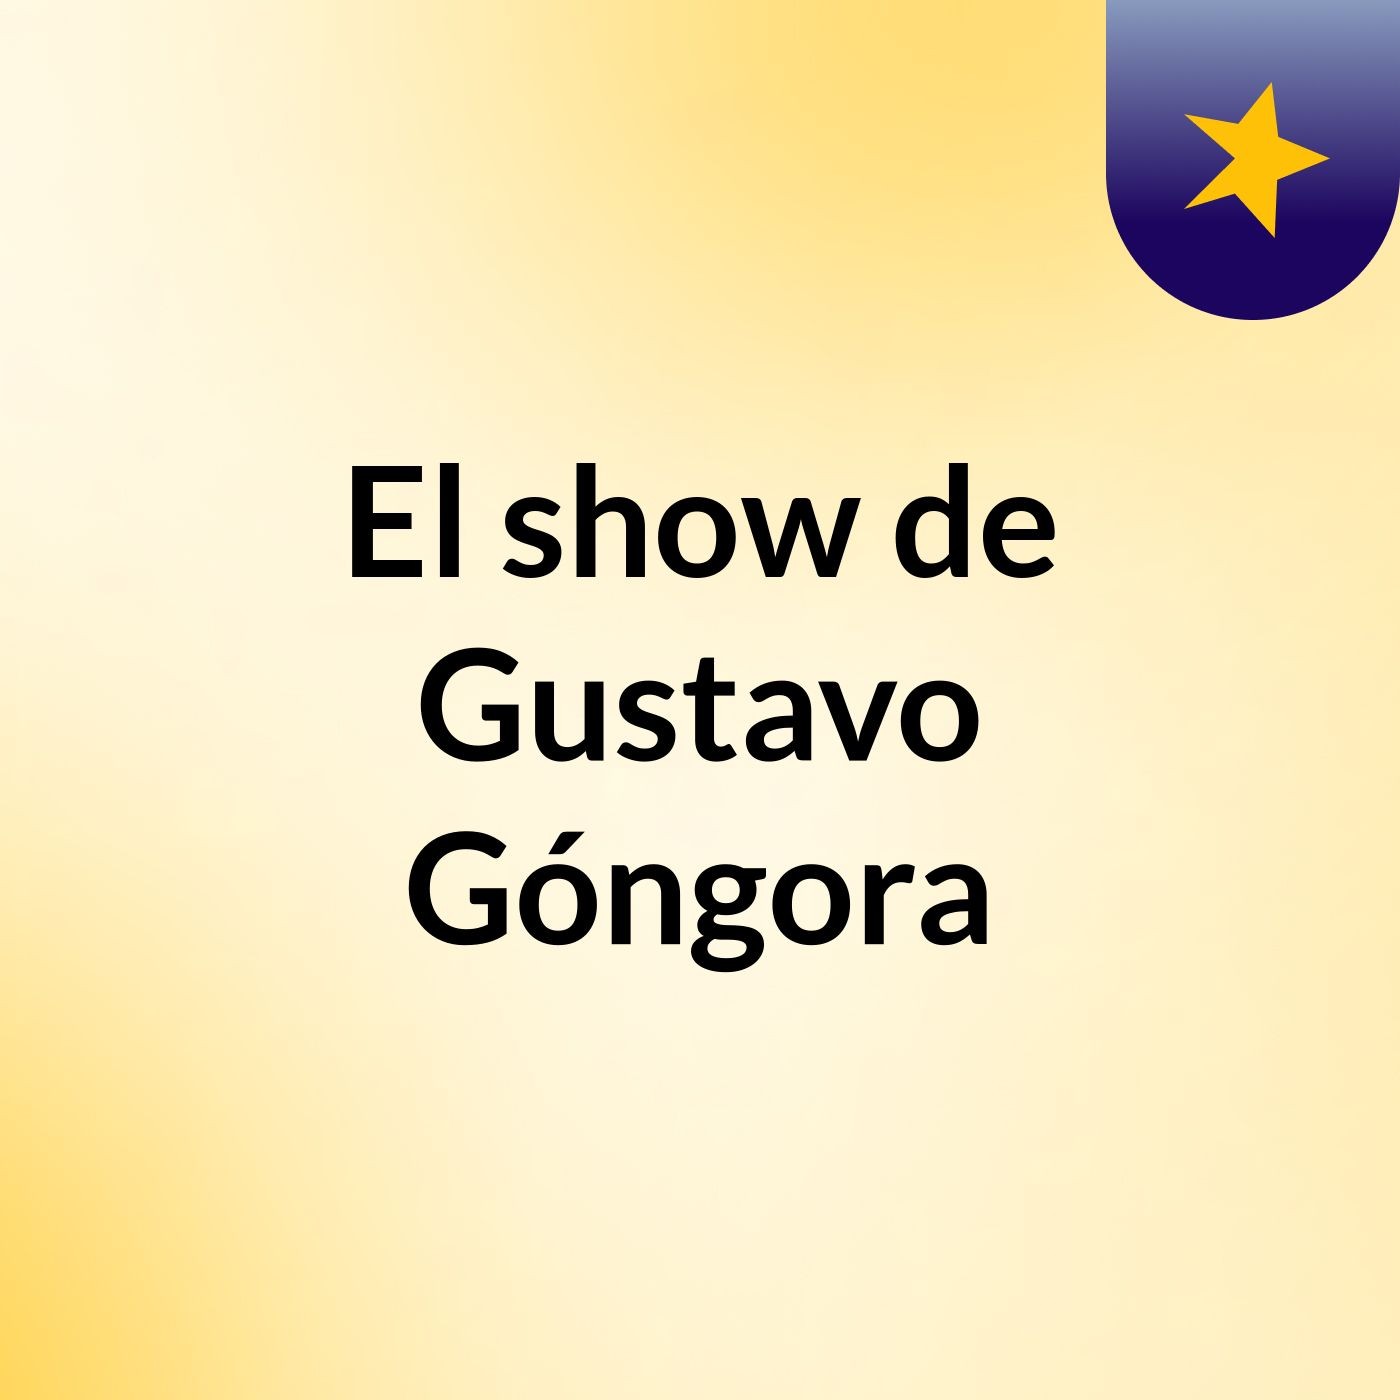 El show de Gustavo Góngora